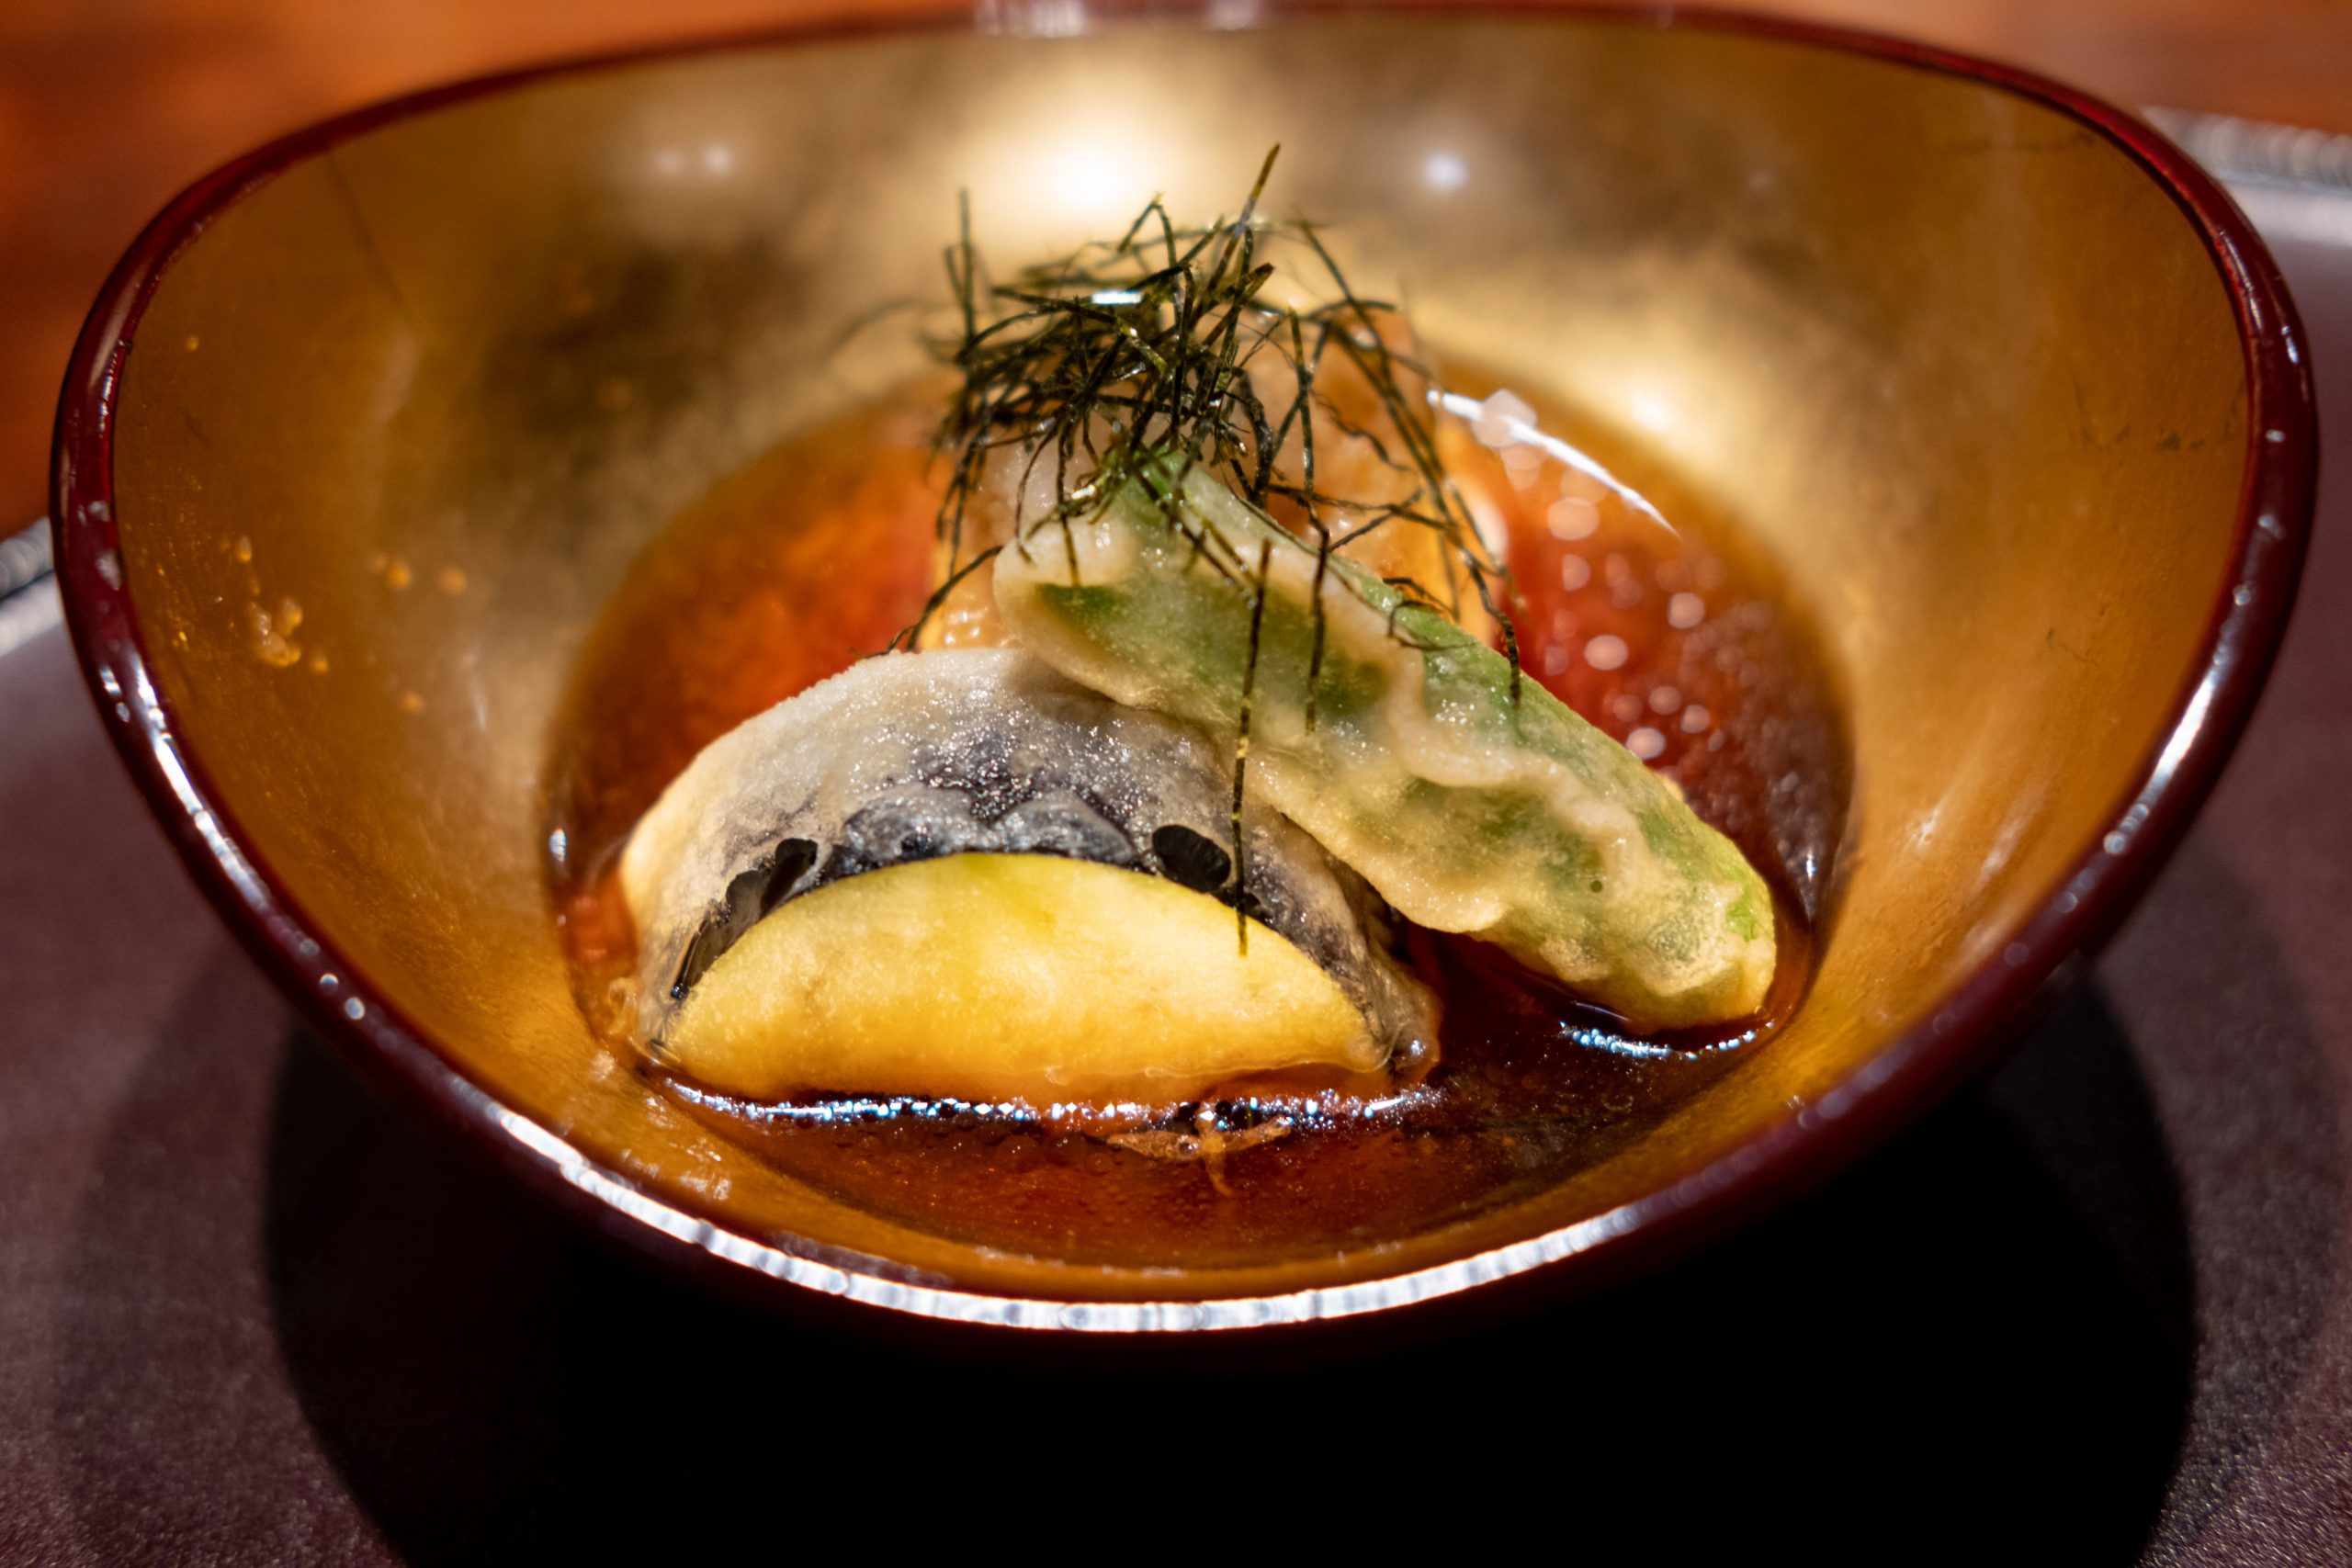 Beautiful tempura vegetables in sauce